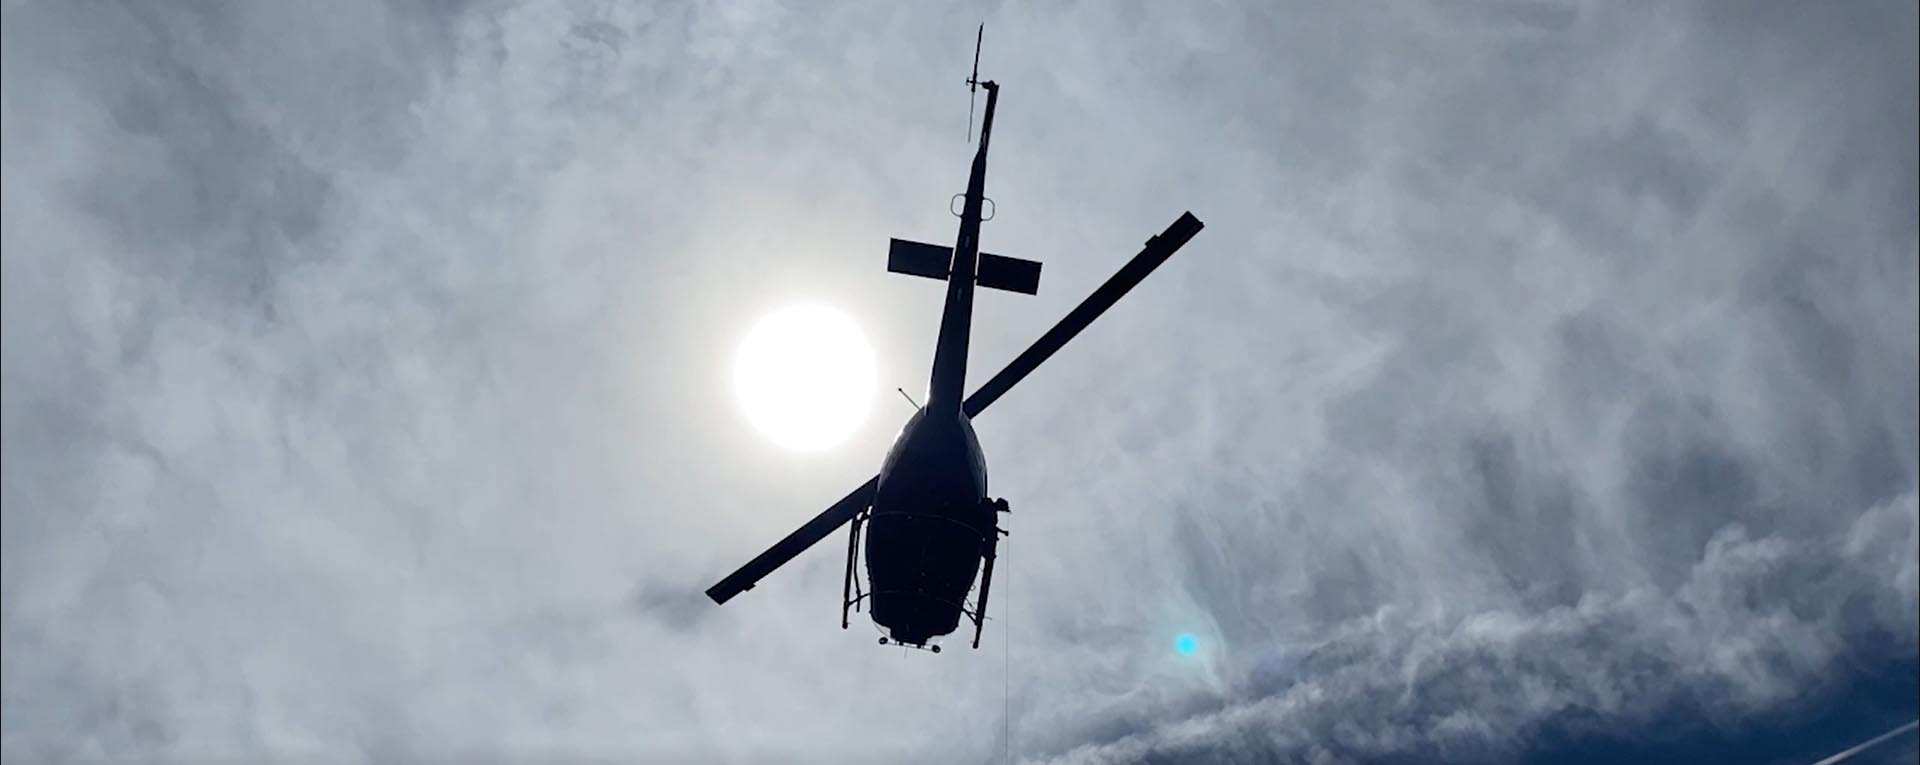 Hélicoptère volant dans le ciel